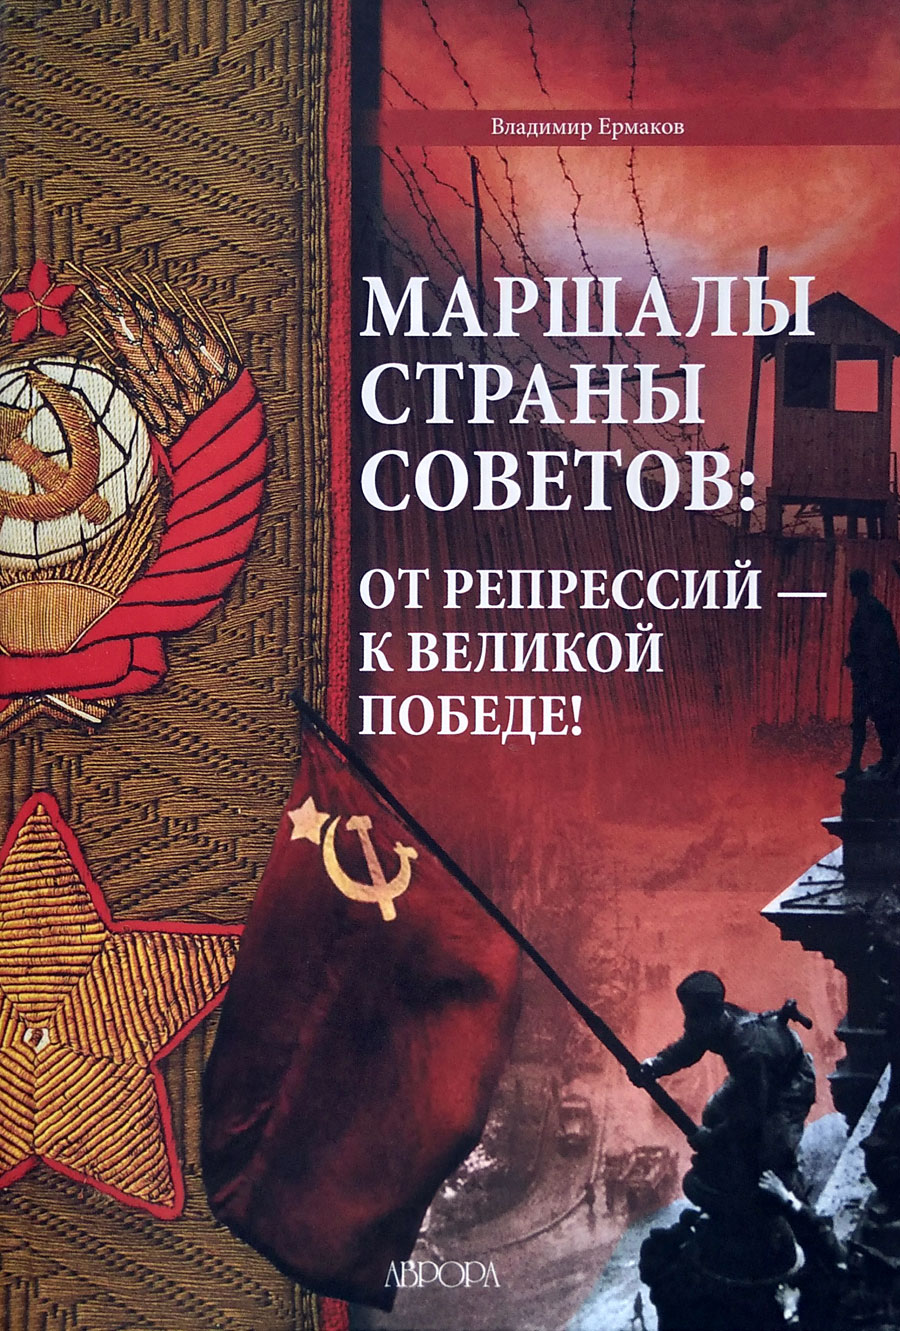 Маршалы Страны Советов: от репрессий - к великой победе